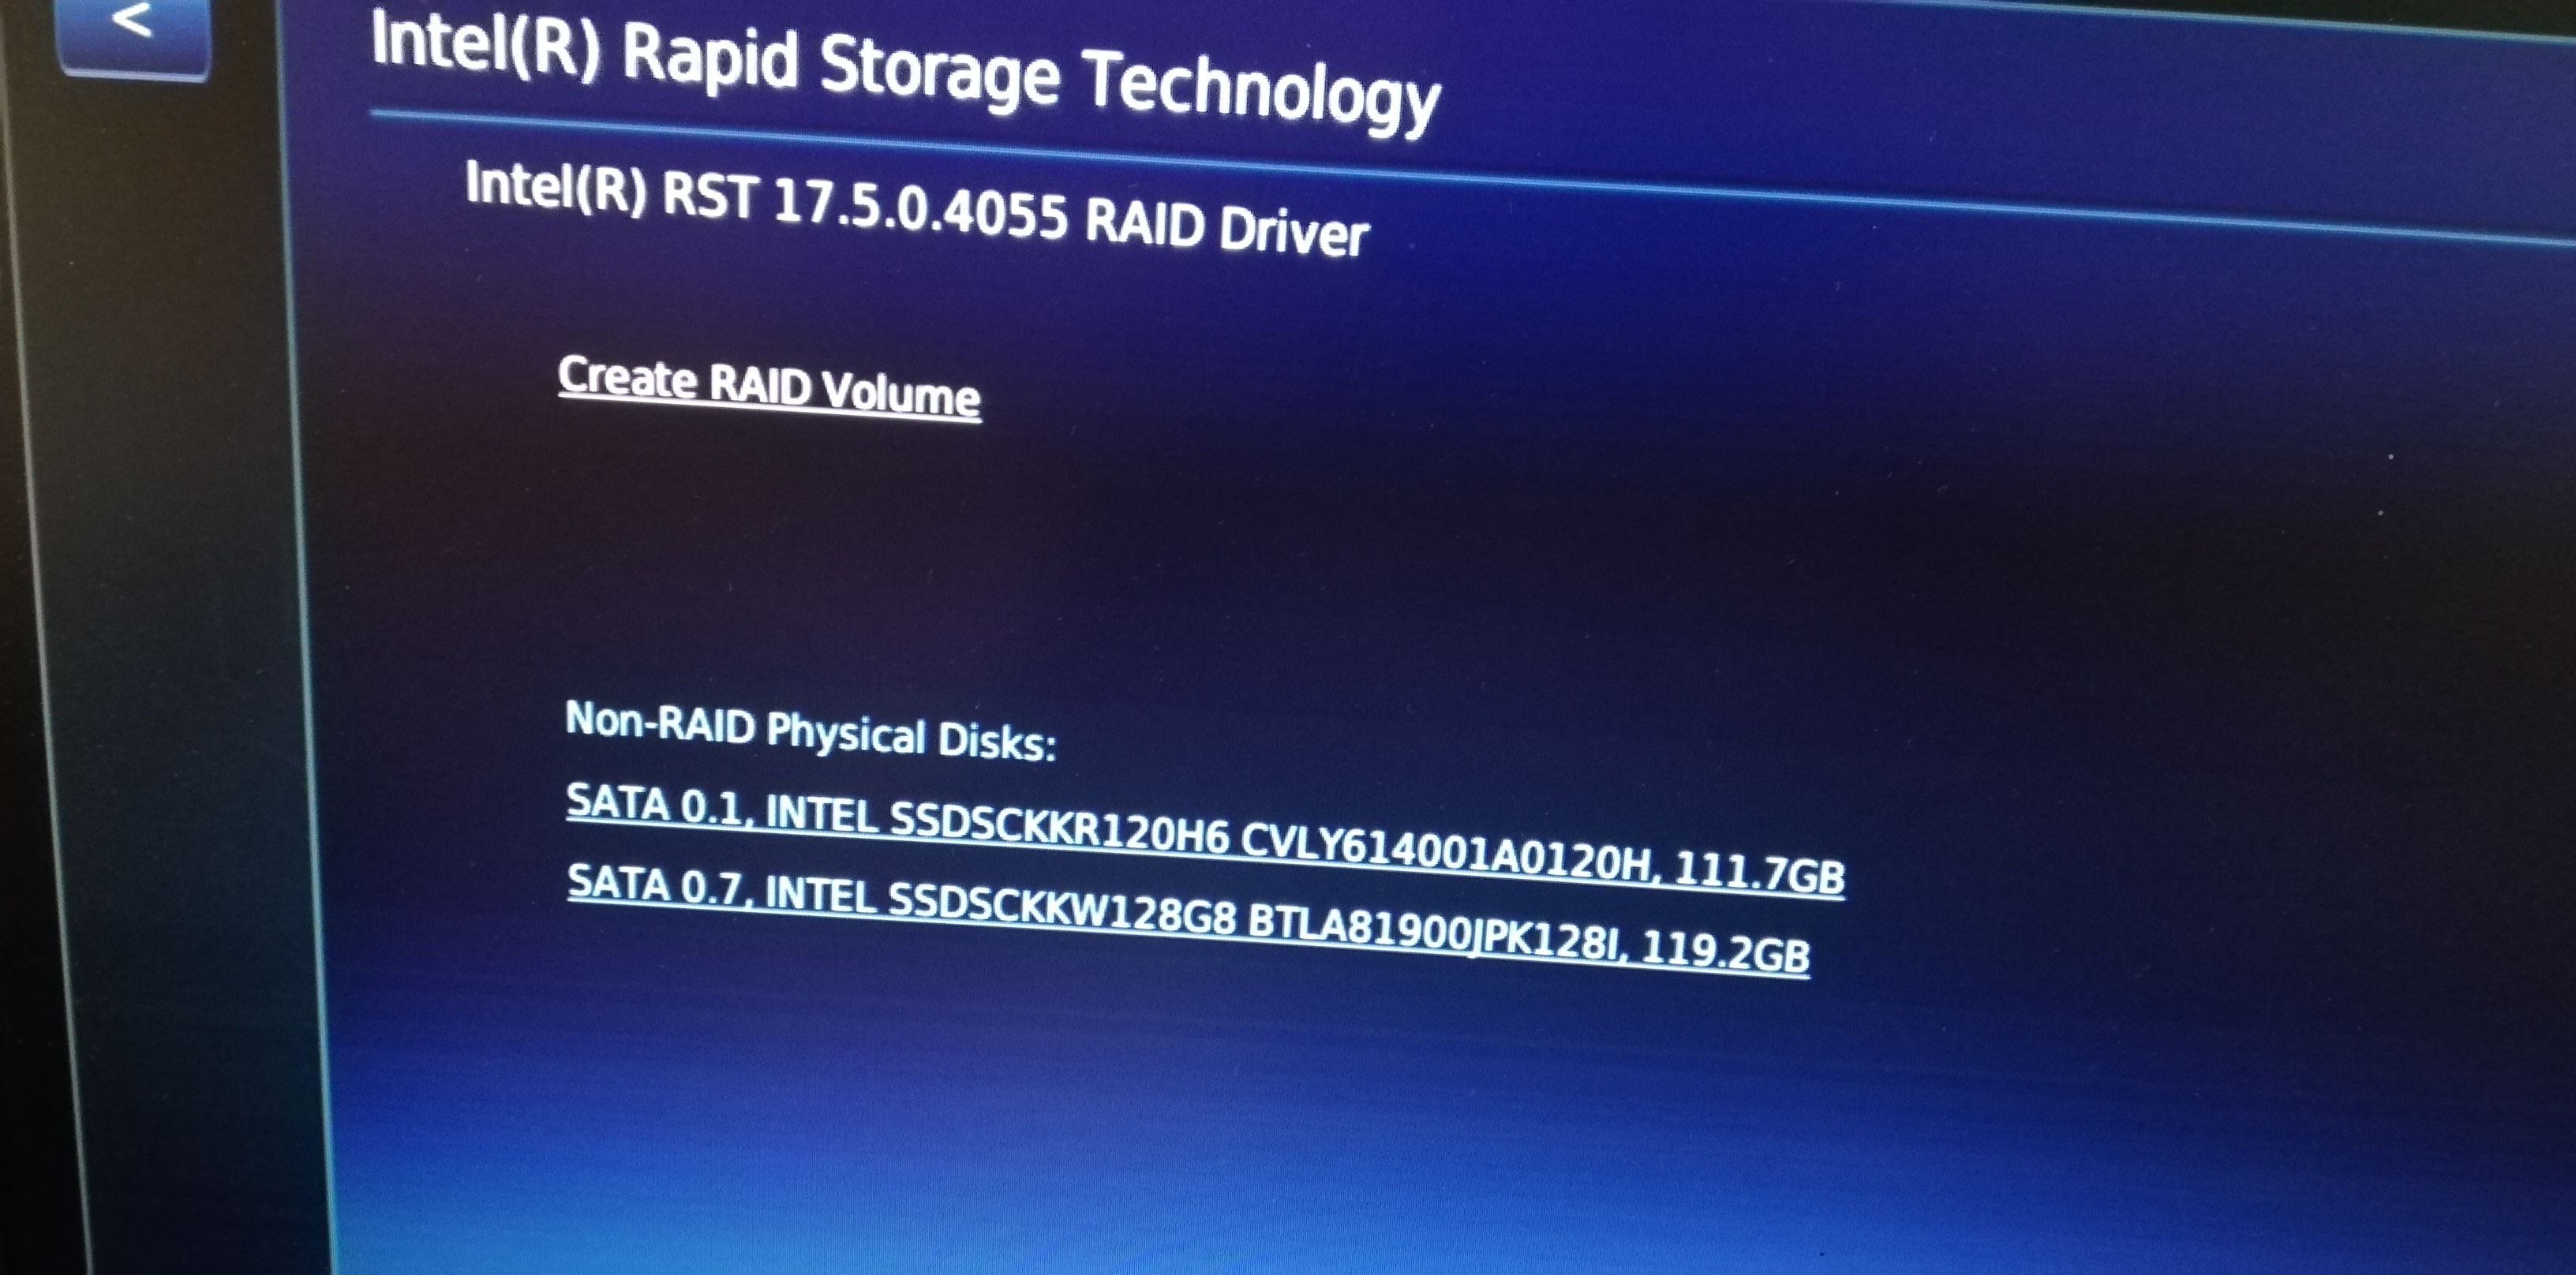 NUC9I9QNX Cant install W10 on raid - Intel Community